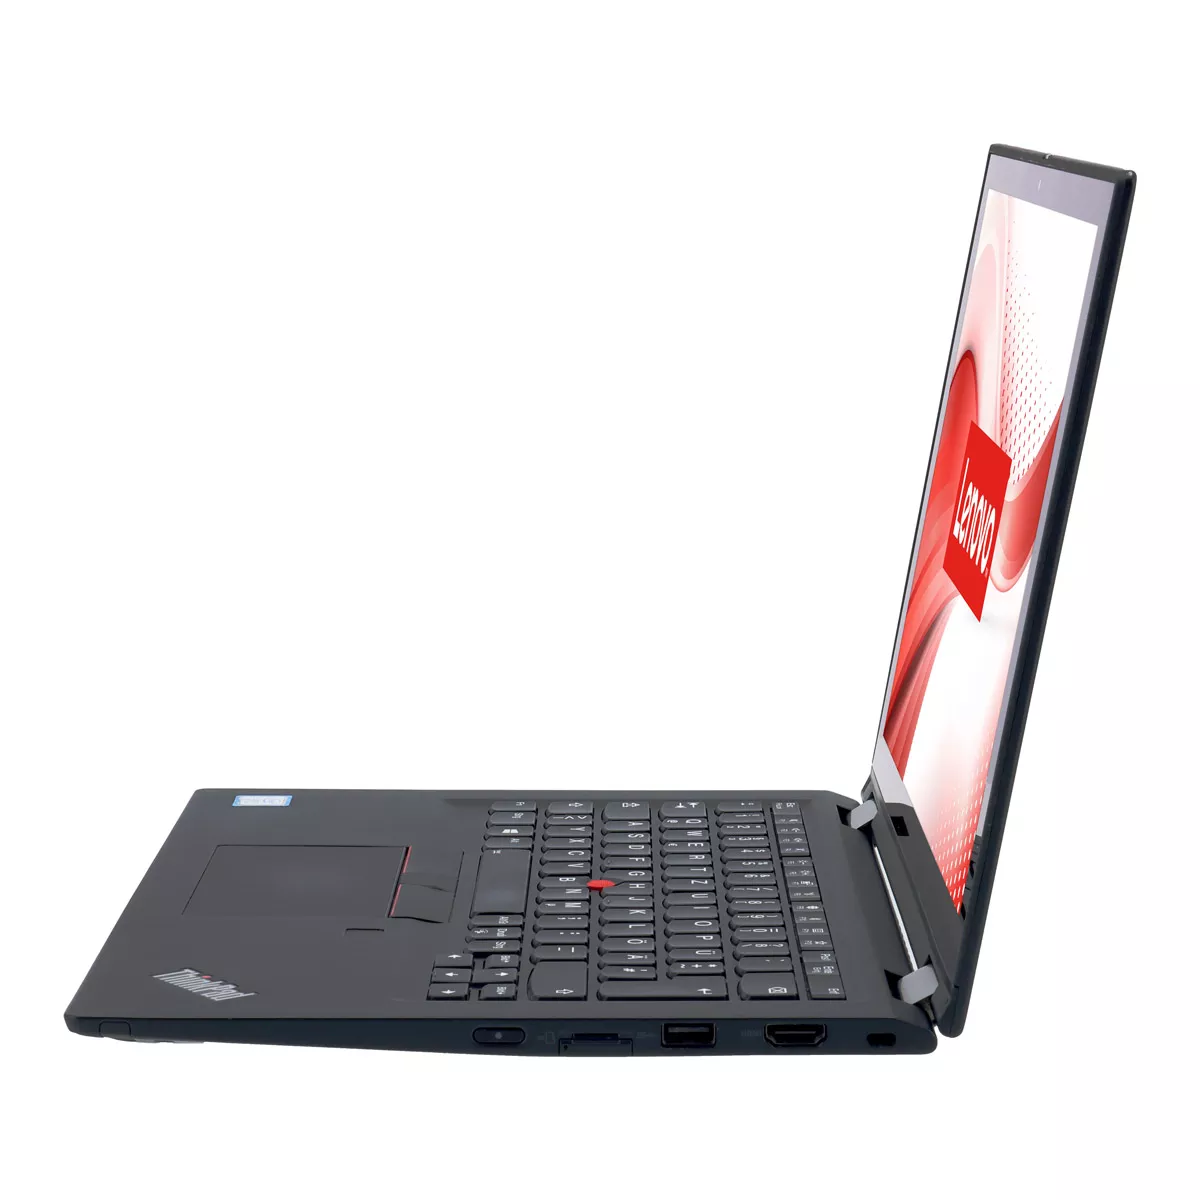 Lenovo ThinkPad X390 Yoga Core i5 8365U Touch 8 GB 240 GB M.2 nVME SSD Webcam B